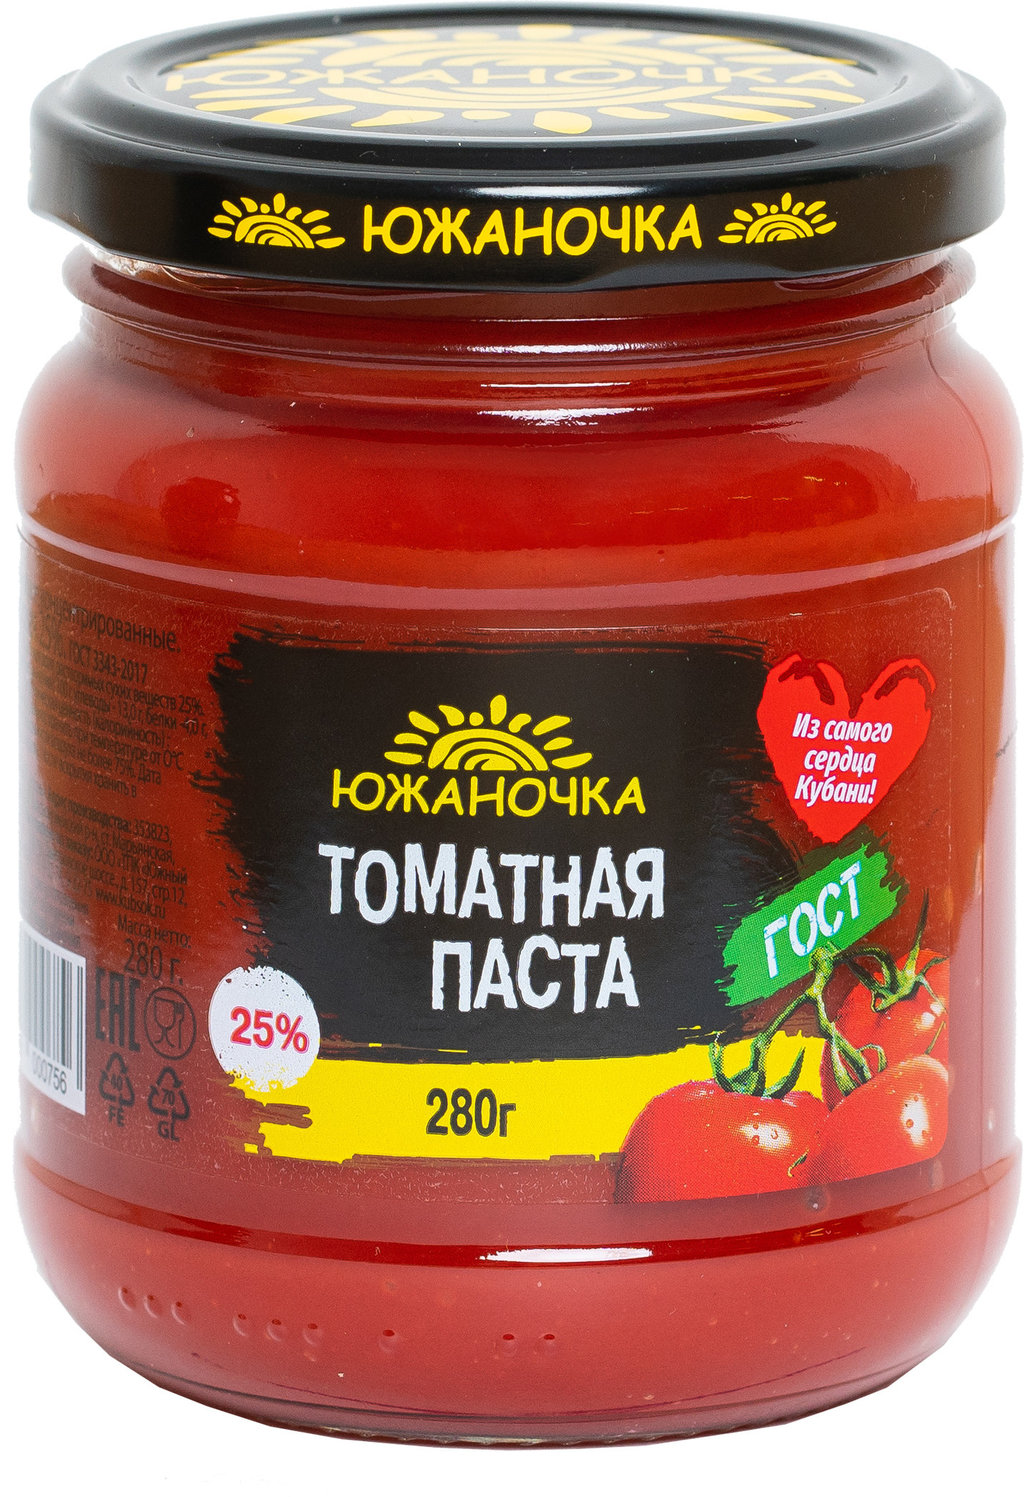 tomatnaya-pasta-yuzhanochka-280.jpg